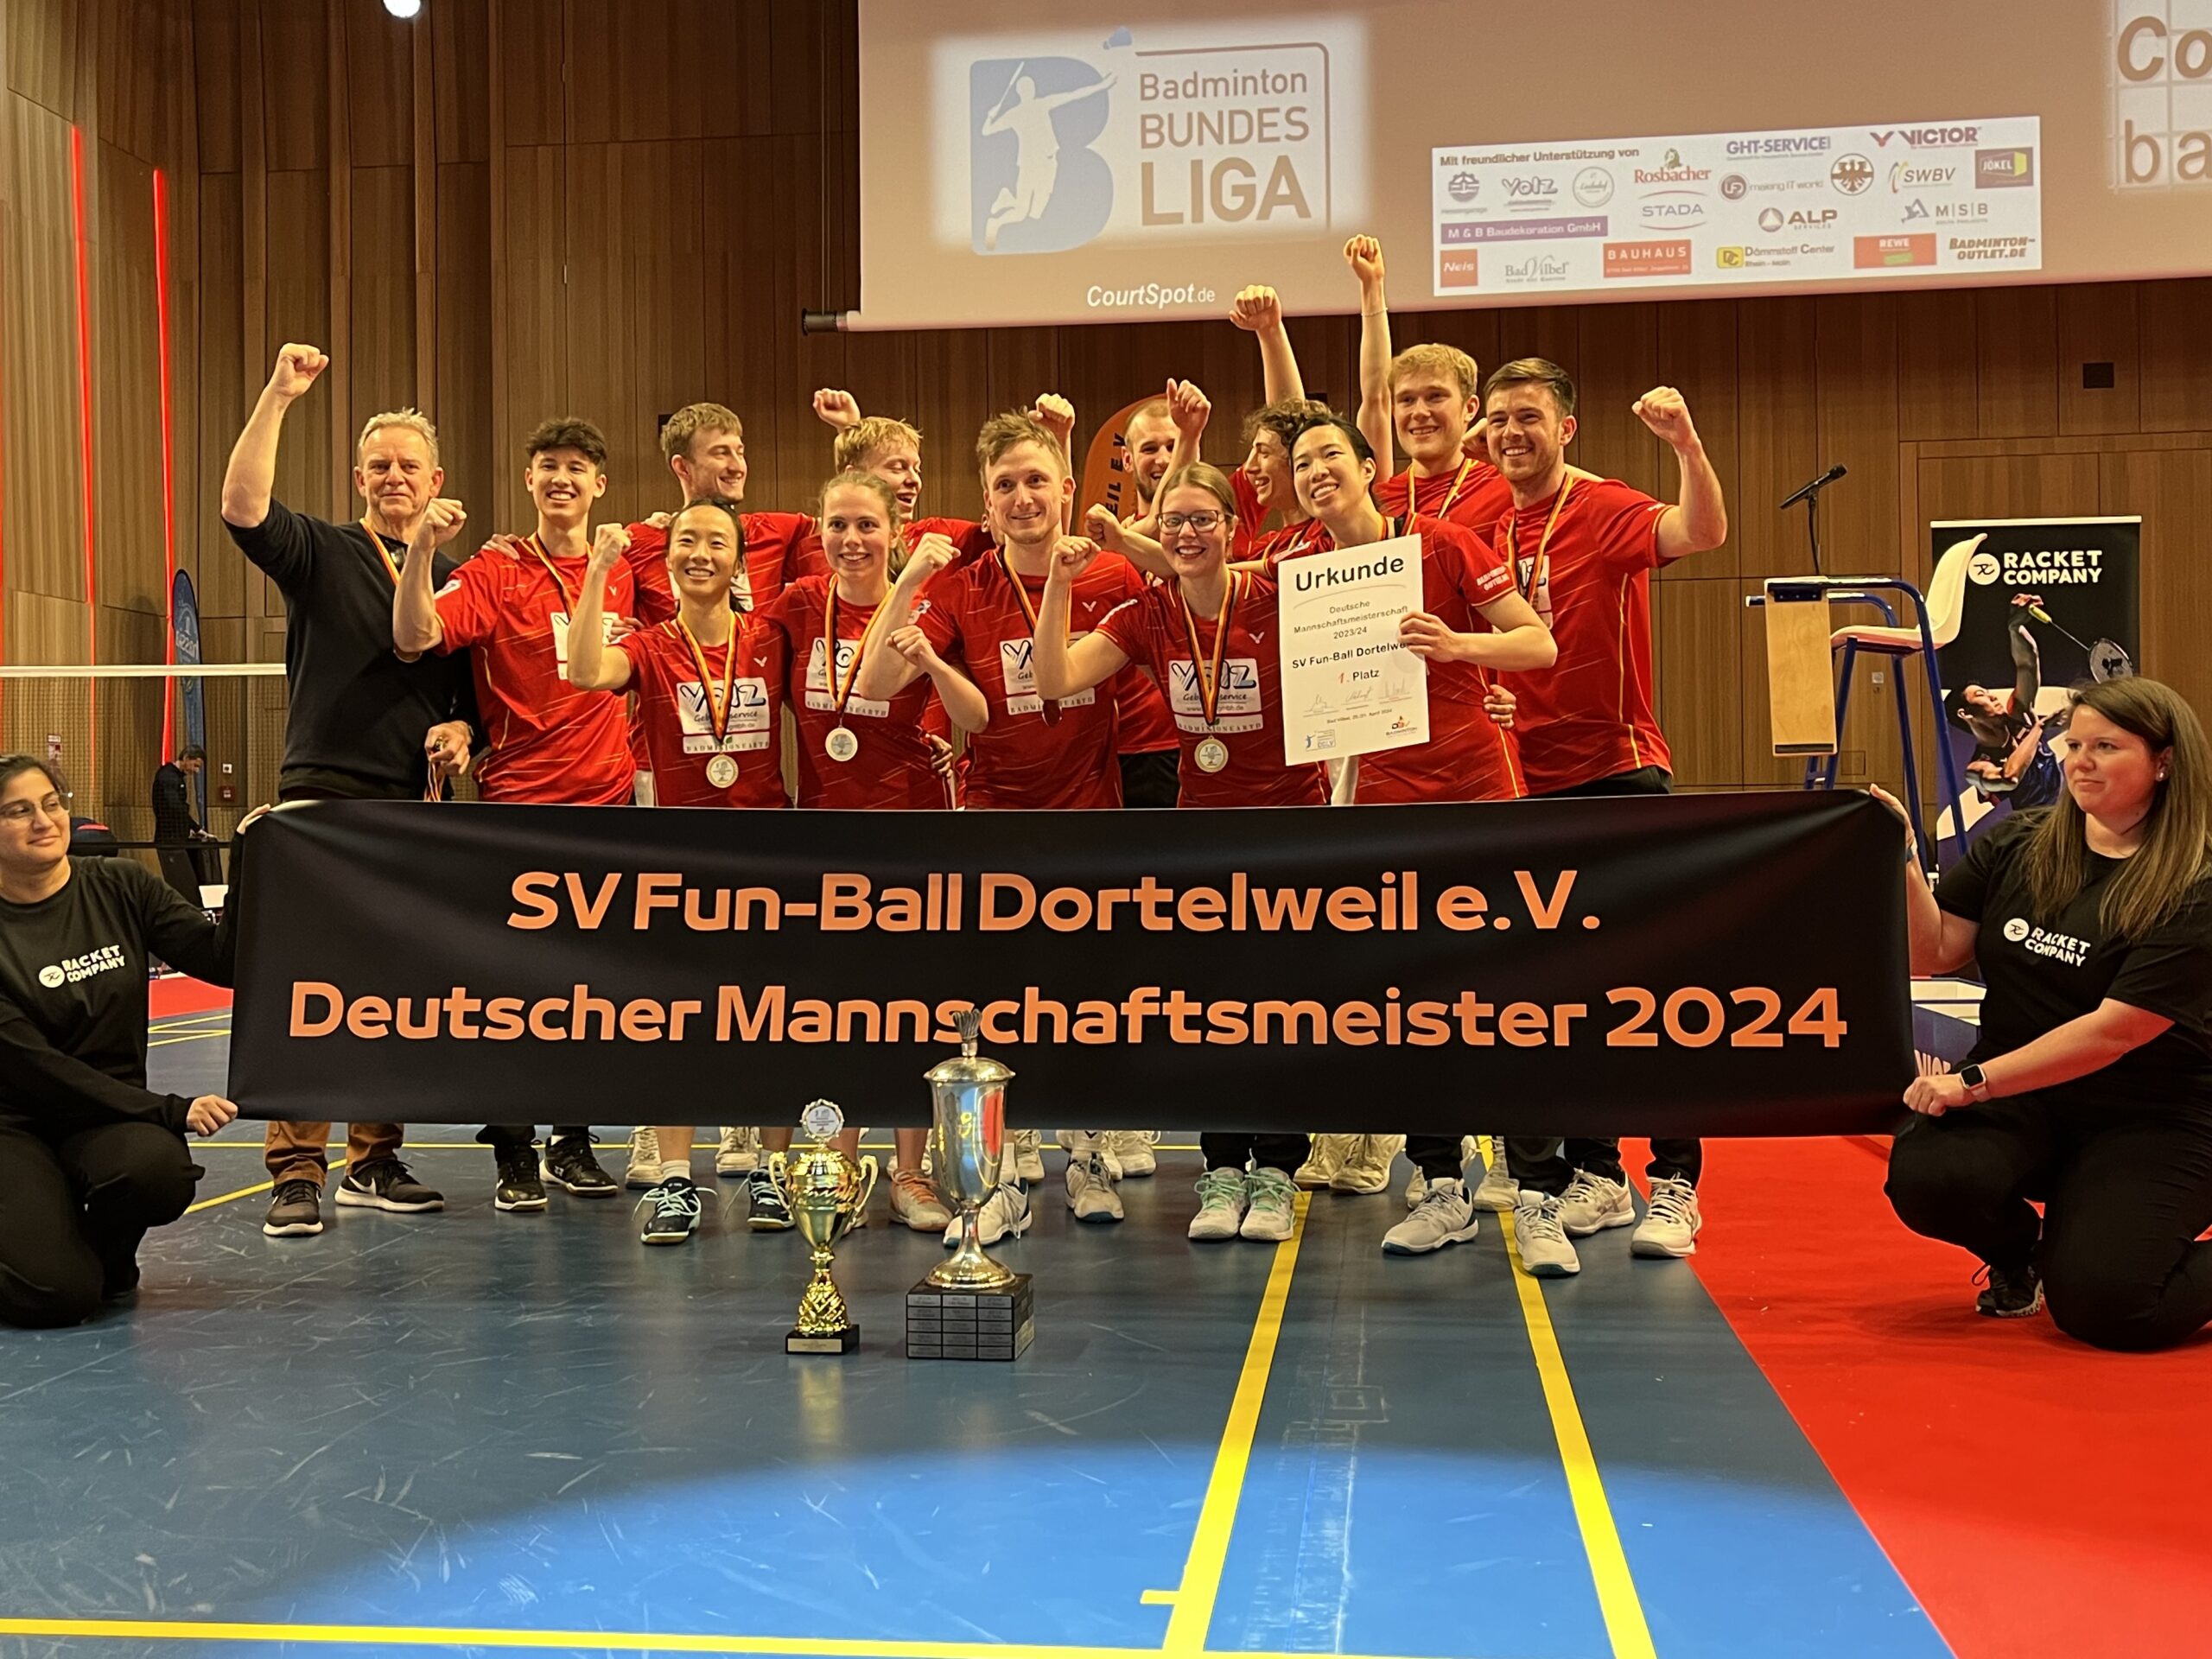 SV Fun-Ball Dortelweil zum ersten Mal Meister!